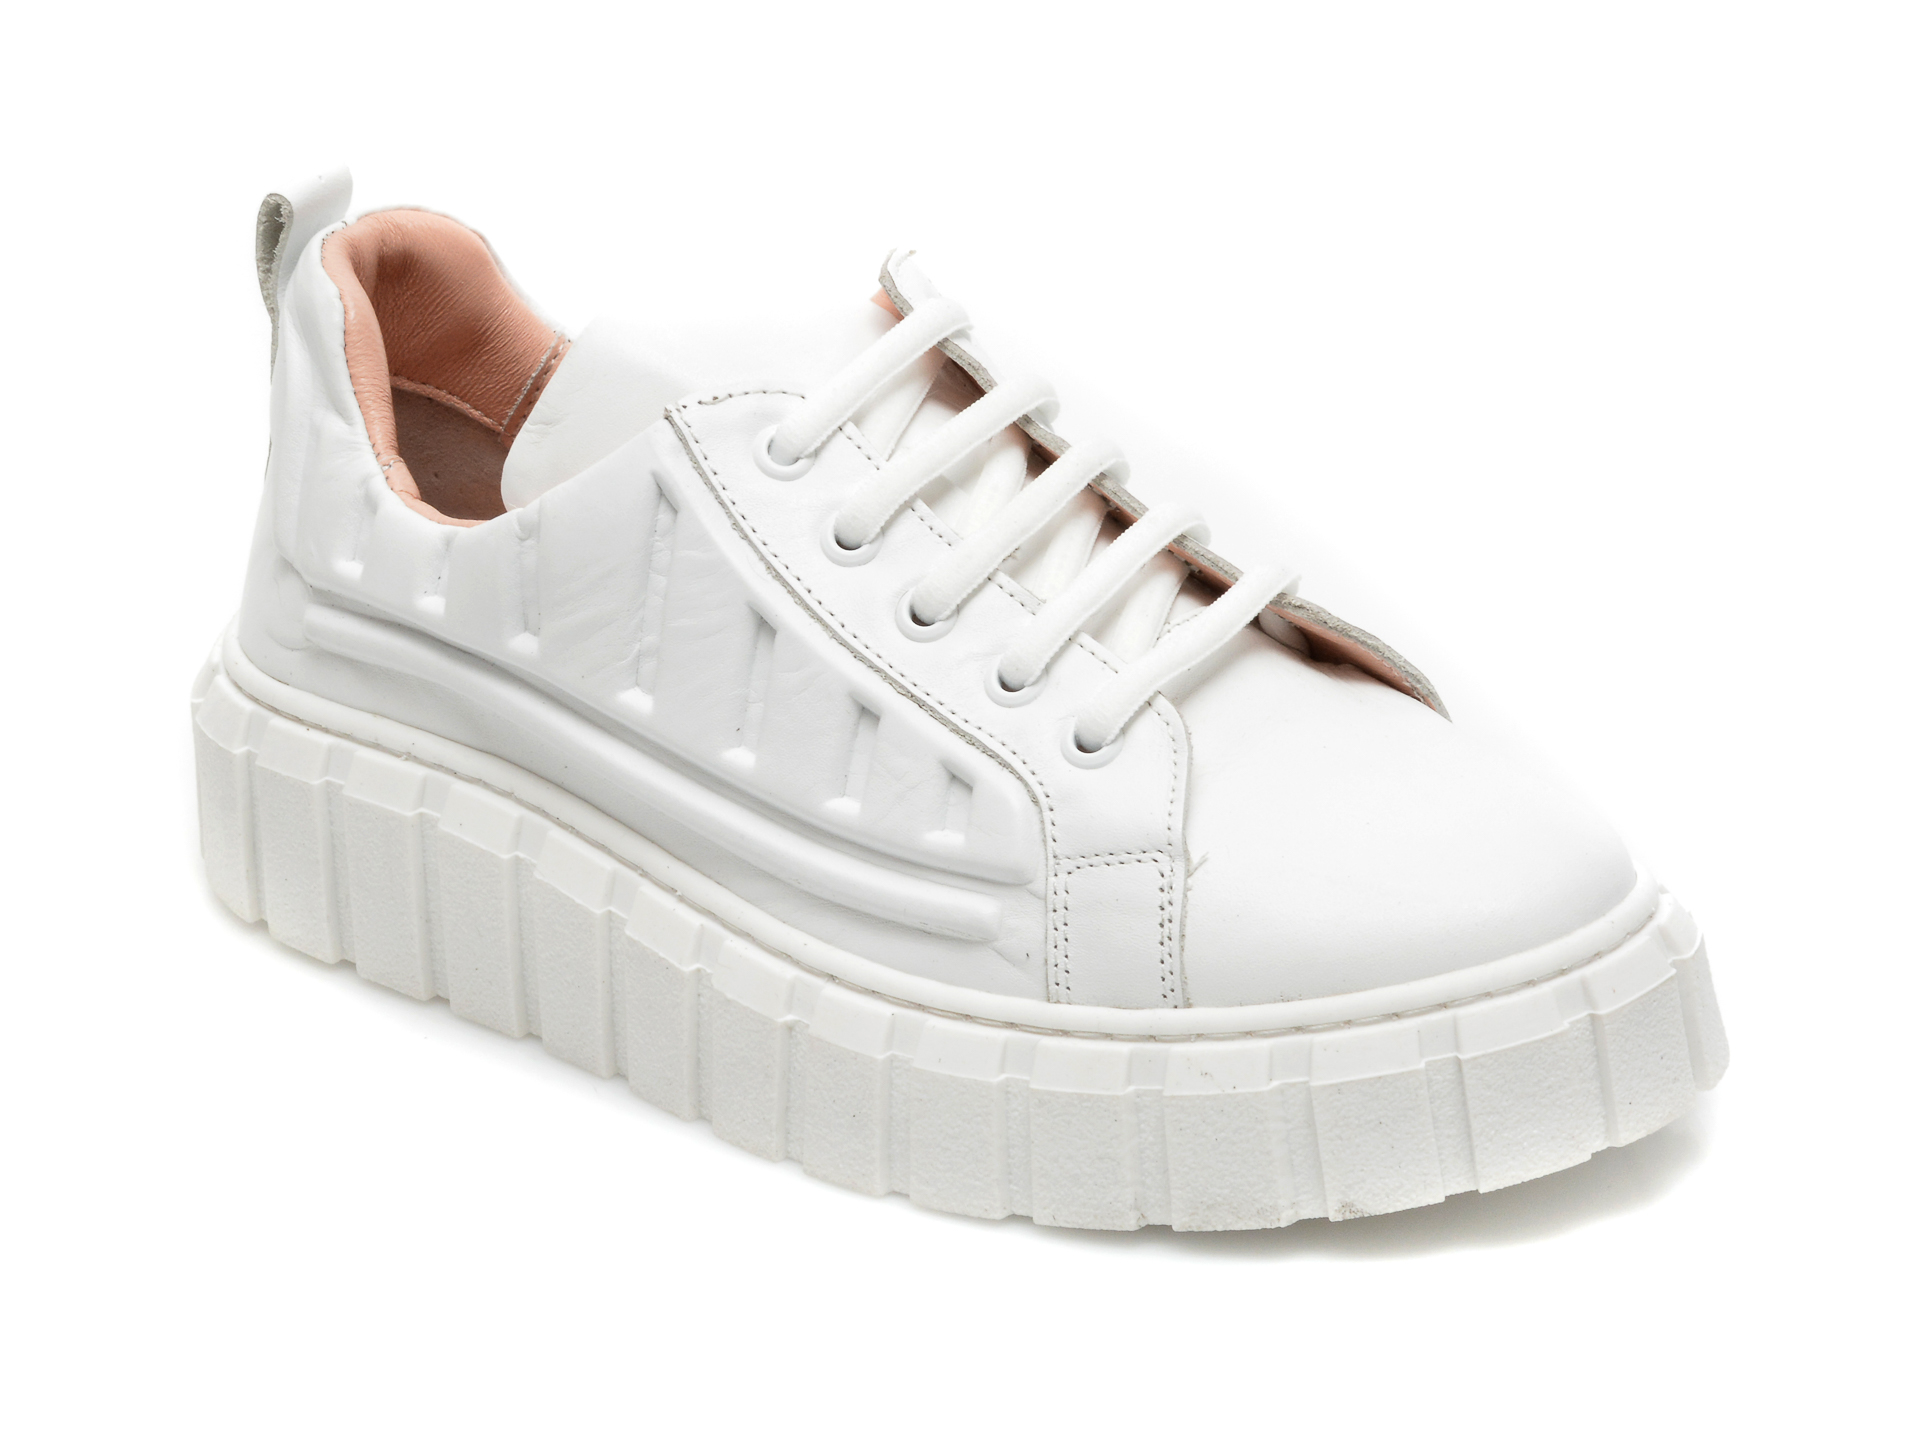 Pantofi FLAVIA PASSINI albi, 922502, din piele naturala Flavia Passini imagine noua